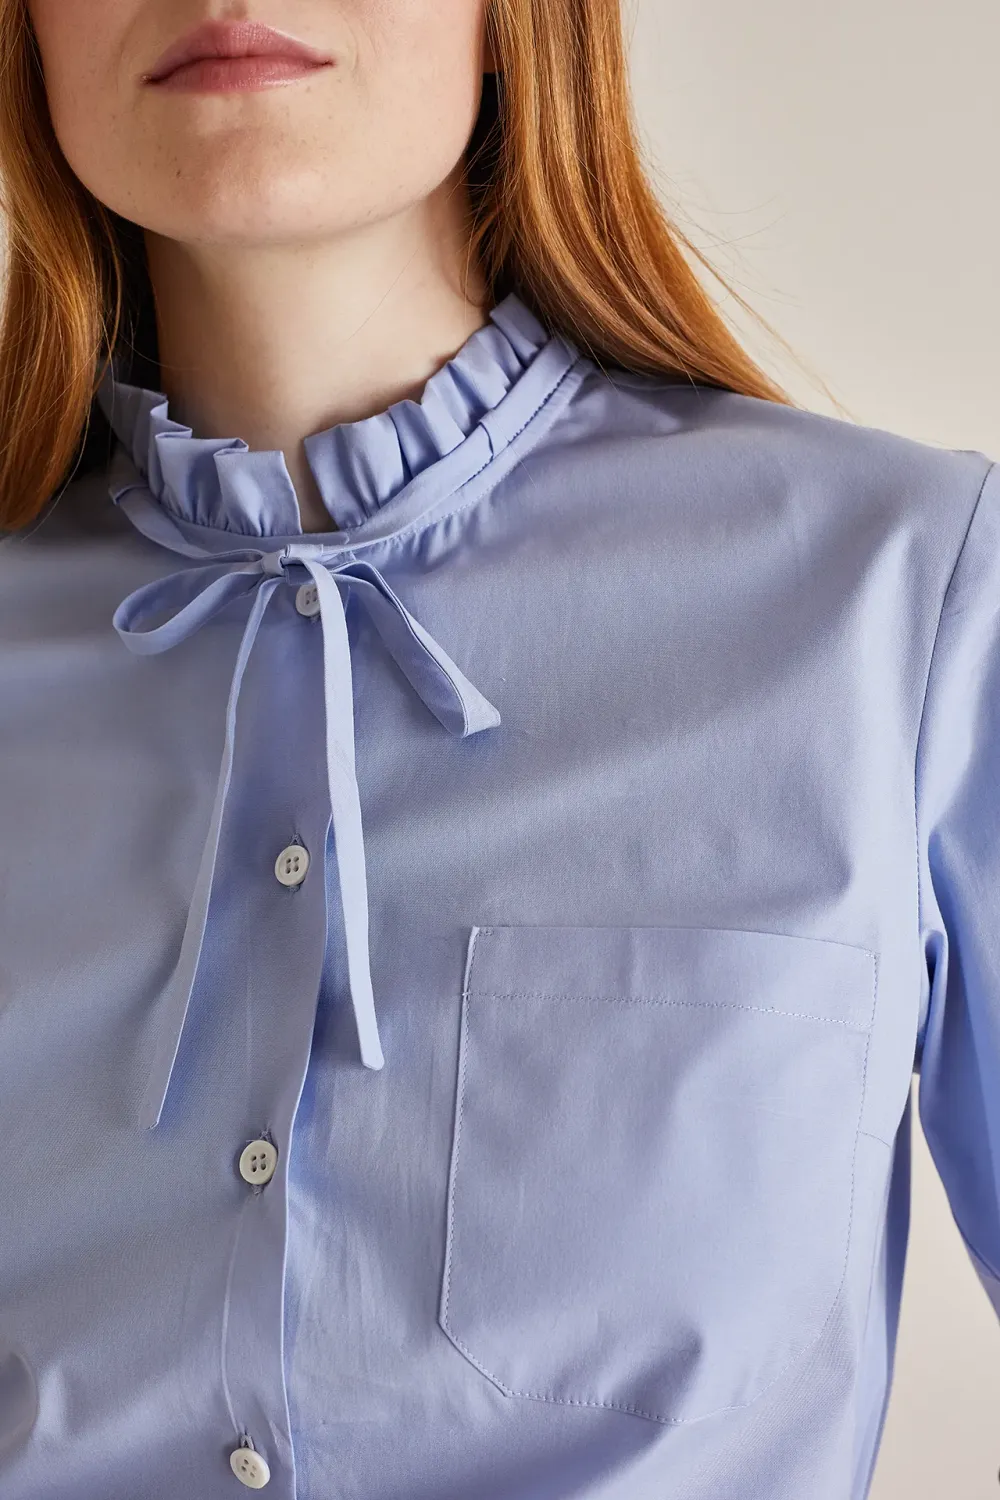 Shirt with ruffled collar and ribbon